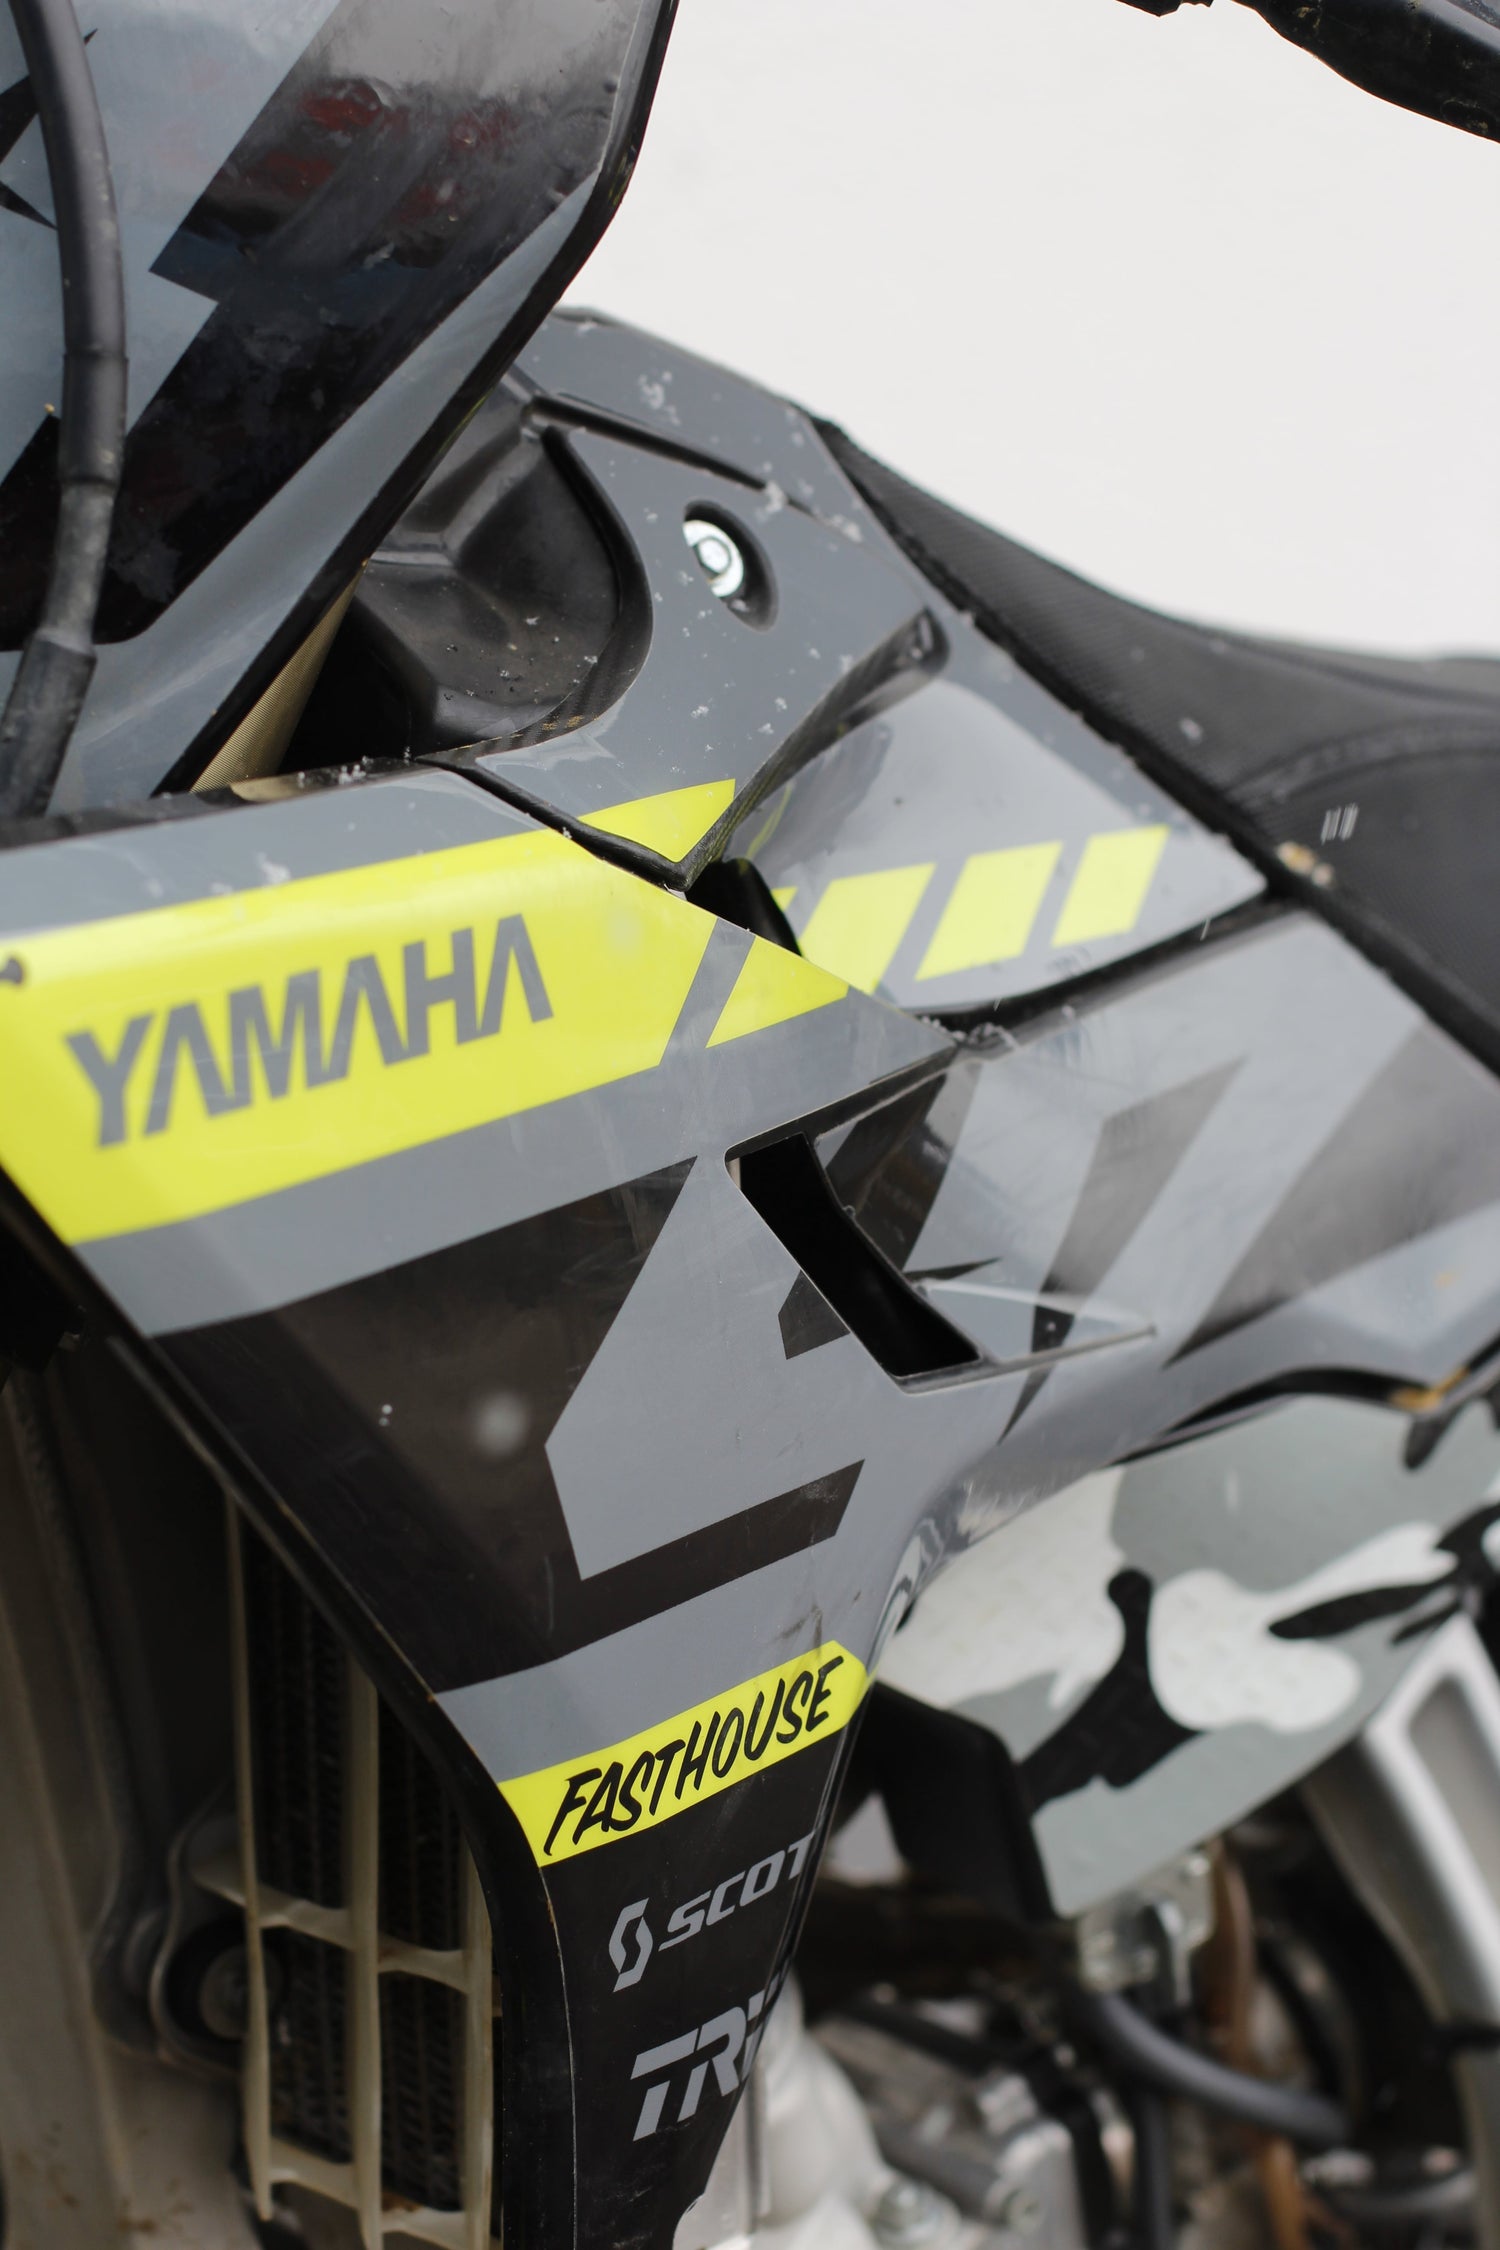 Detailshot von einem Full Custom Dekor auf einer Yamaha YZ 125 mit Neon und einem Glossy Finish